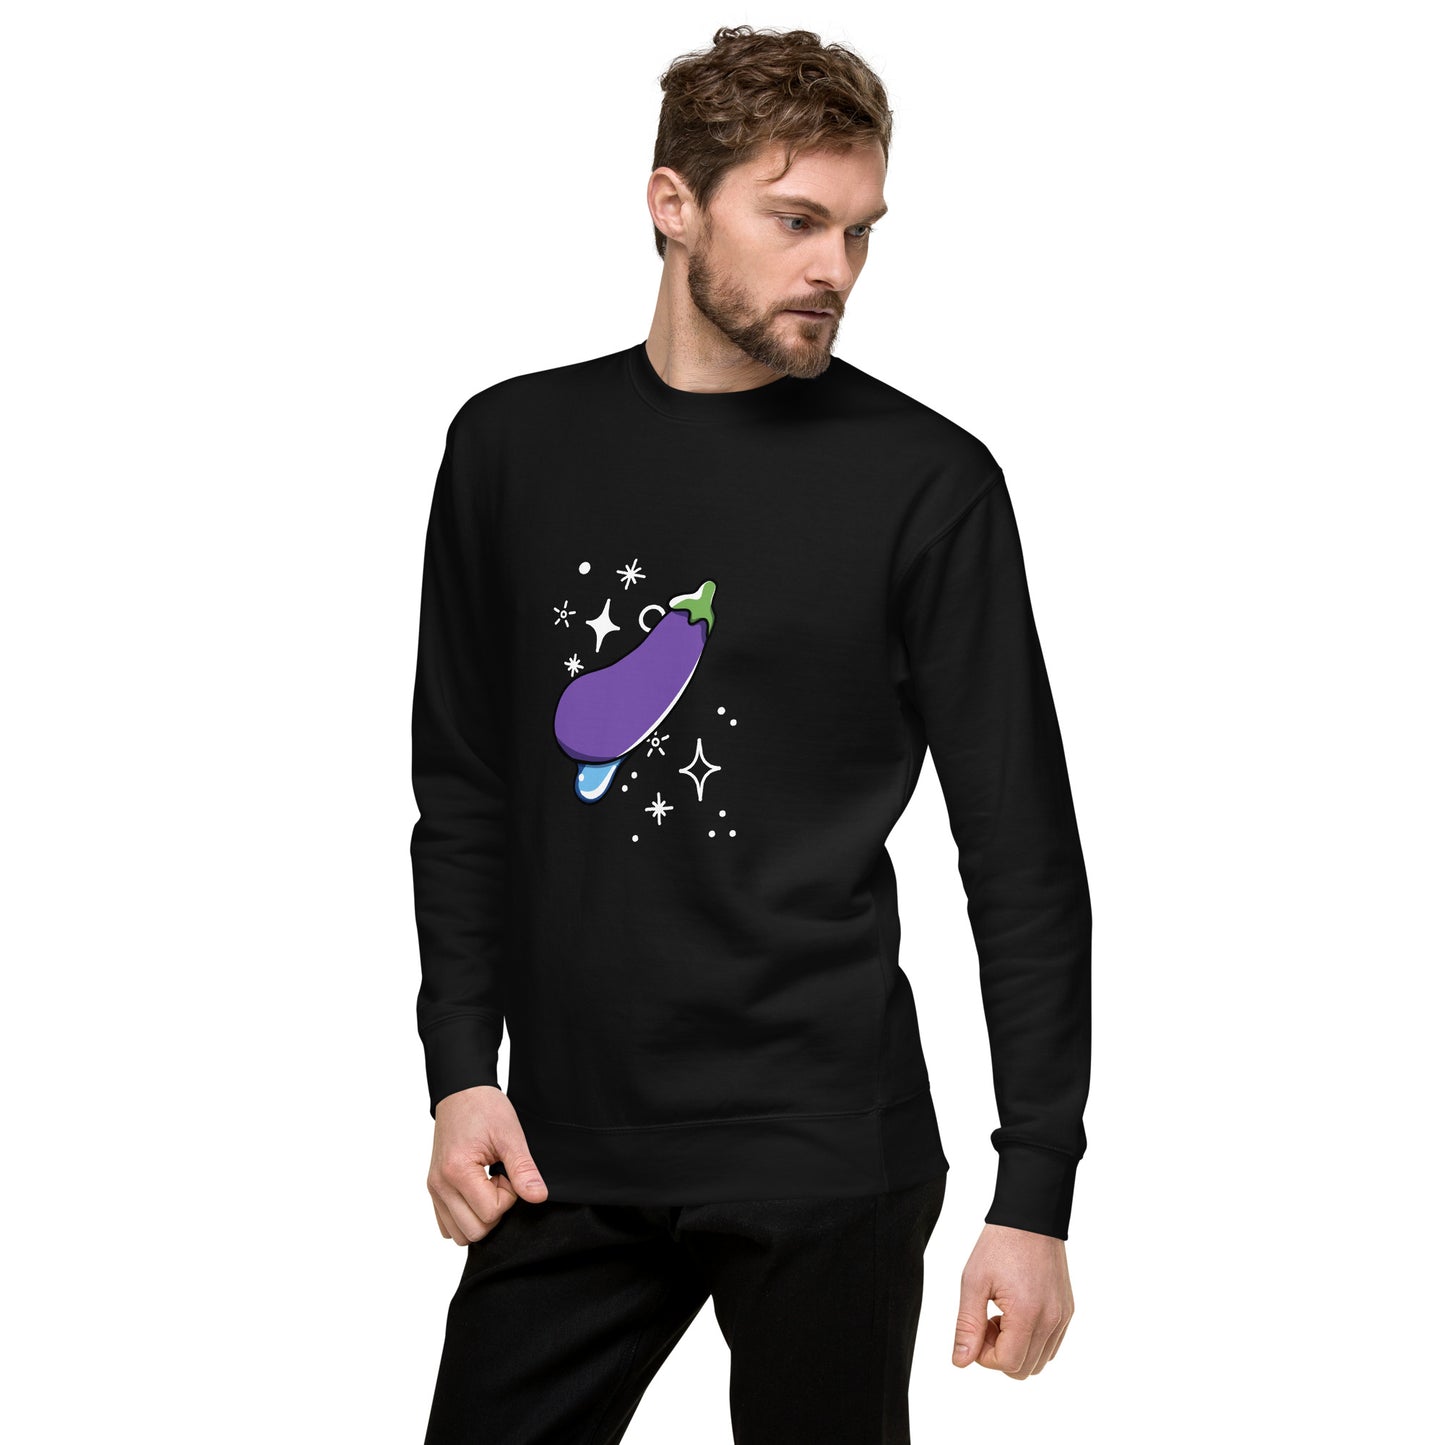 Eggplant Sweatshirt